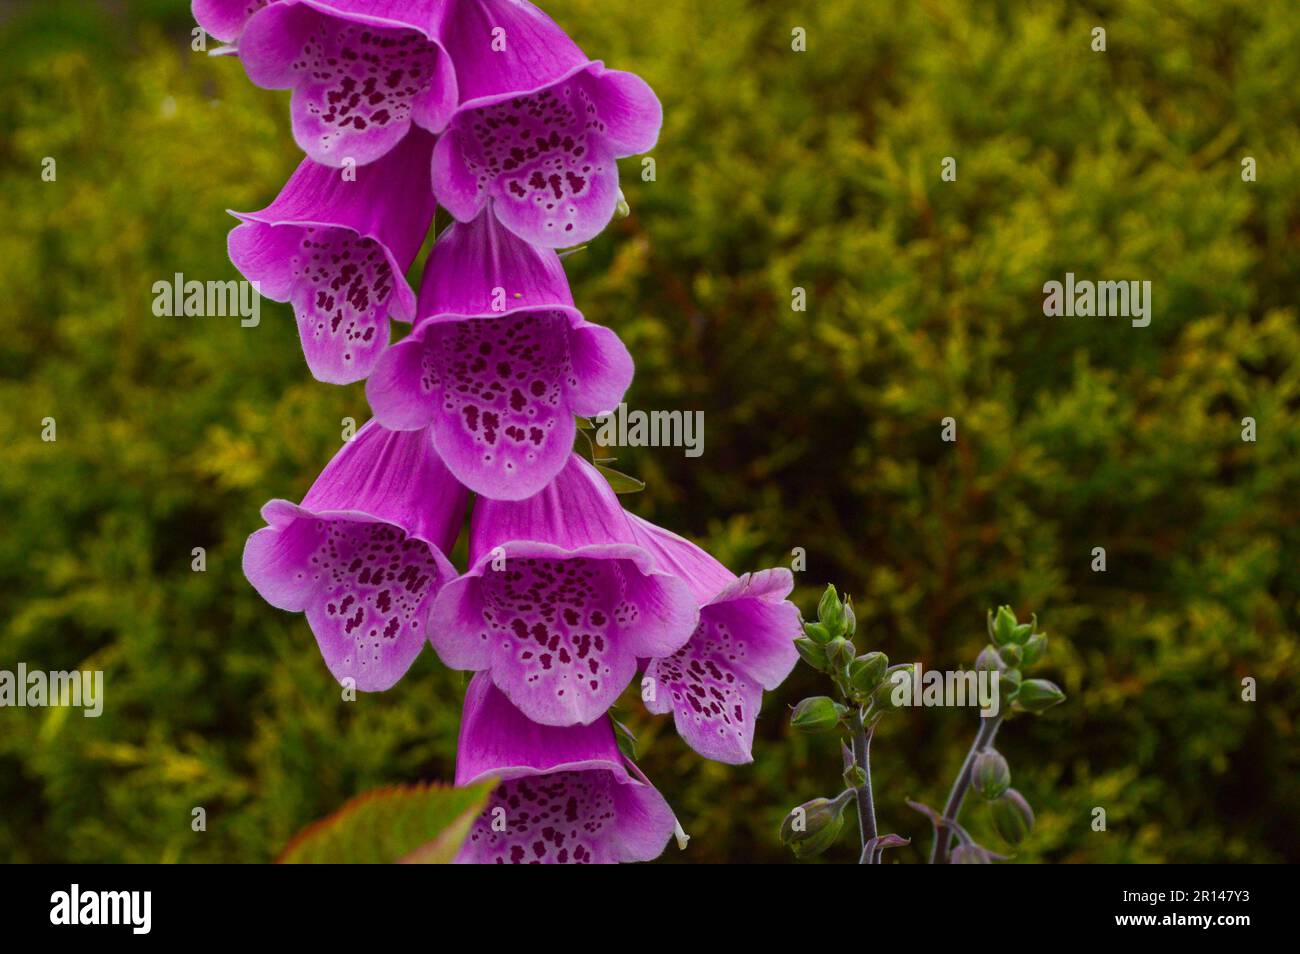 Digitalis purpurea, gewöhnlicher Fuchshandschuh, ist eine kurzlebige, mehrjährige Pflanze. Die Blätter sind spiralförmig angeordnet. Stockfoto